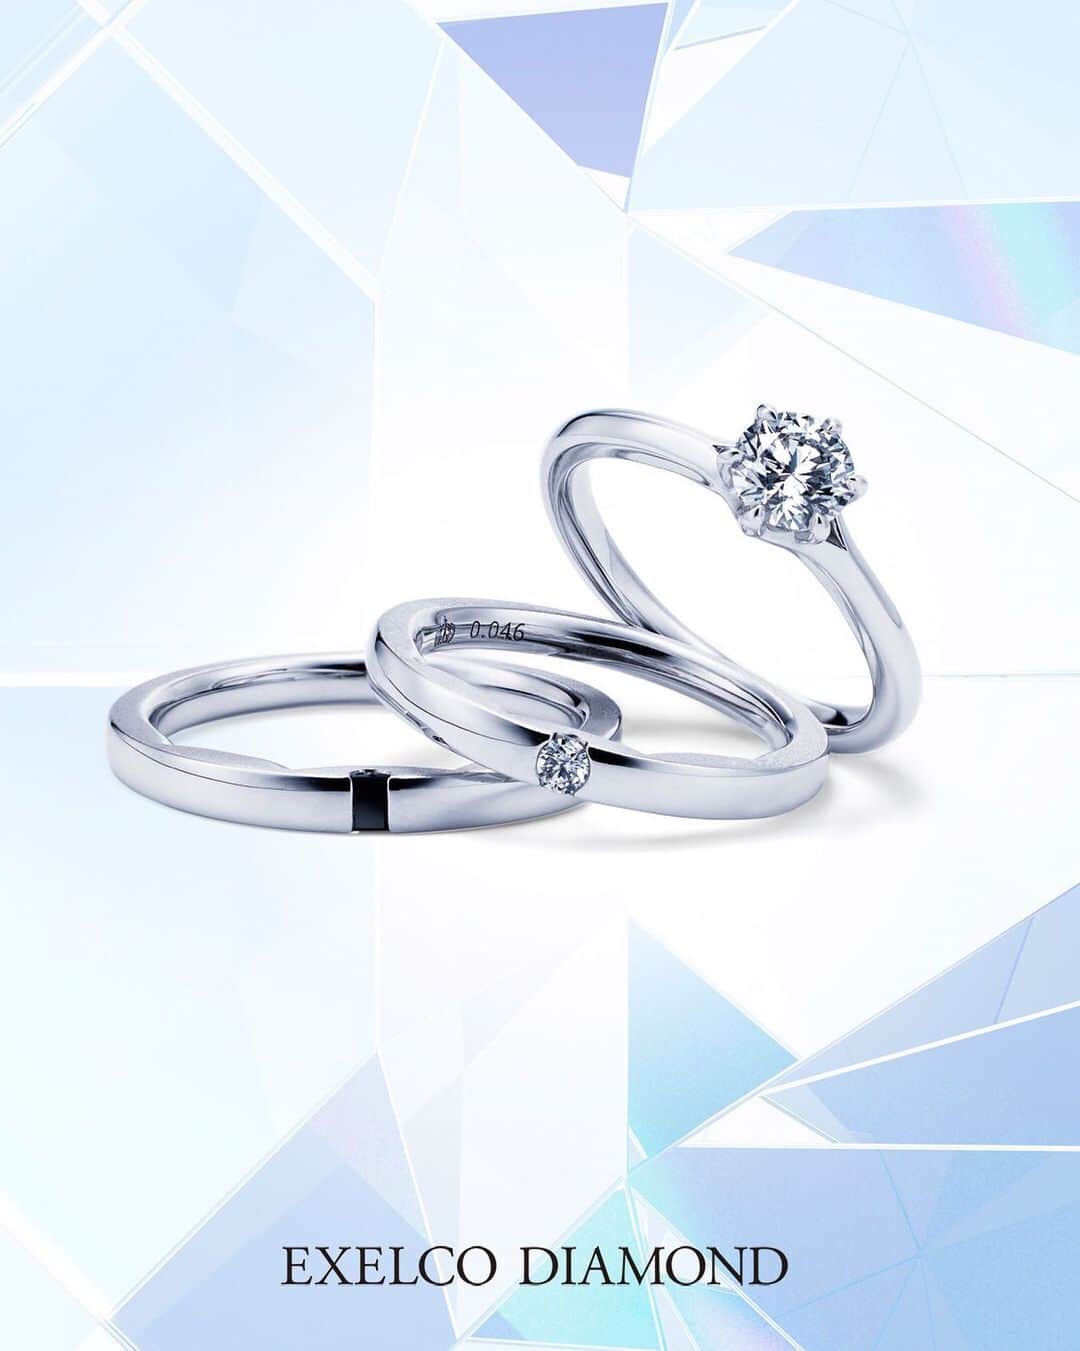 エクセルコ ダイヤモンド 婚約指輪♔結婚指輪のインスタグラム：「* 輝きの原点「アイディアルラウンドブリリアントカット」の発明から100周年を記念し、輝きの3つの要素（ブリリアンシー・スパークル・ファイヤー）を最大限に引き出すため計算し尽くした新作モデルを発表します。 *   〝Optique〟（オプティーク） * -至高の輝きを未来へ繋ぐ方程式-  エンゲージリングの6本の爪は、広がる輝きをイメージ。センターダイヤモンドのサイドの開口部も光を取り込んで、輝きがより増すための設計をしています。 * 輝きのためのデザイン〝オプティーク〟を7月6日(土)から始まるアニバーサリーフェアで発表いたします。  * ぜひ、この機会にアイディアルラウンドブリリアントカットの至高の輝きを店頭でお愉しみください💎  * 詳しくは、公式HPをご覧ください。  店舗一覧 東京本店/盛岡店/仙台店/新潟店/青山店/町田マルイ店/横浜店/みなとみらい店/大宮店/ 宇都宮店/高崎店/静岡店/浜松店/金沢店/長野店/松本店/名古屋本店/大阪店/ 梅田店/京都店/神戸店/広島店/福岡店/ヒルトン福岡シーホーク店/小倉店/博多店/長崎ハマクロス411店/熊本店  * #エクセルコダイヤモンド　#exelcodiamond * *」